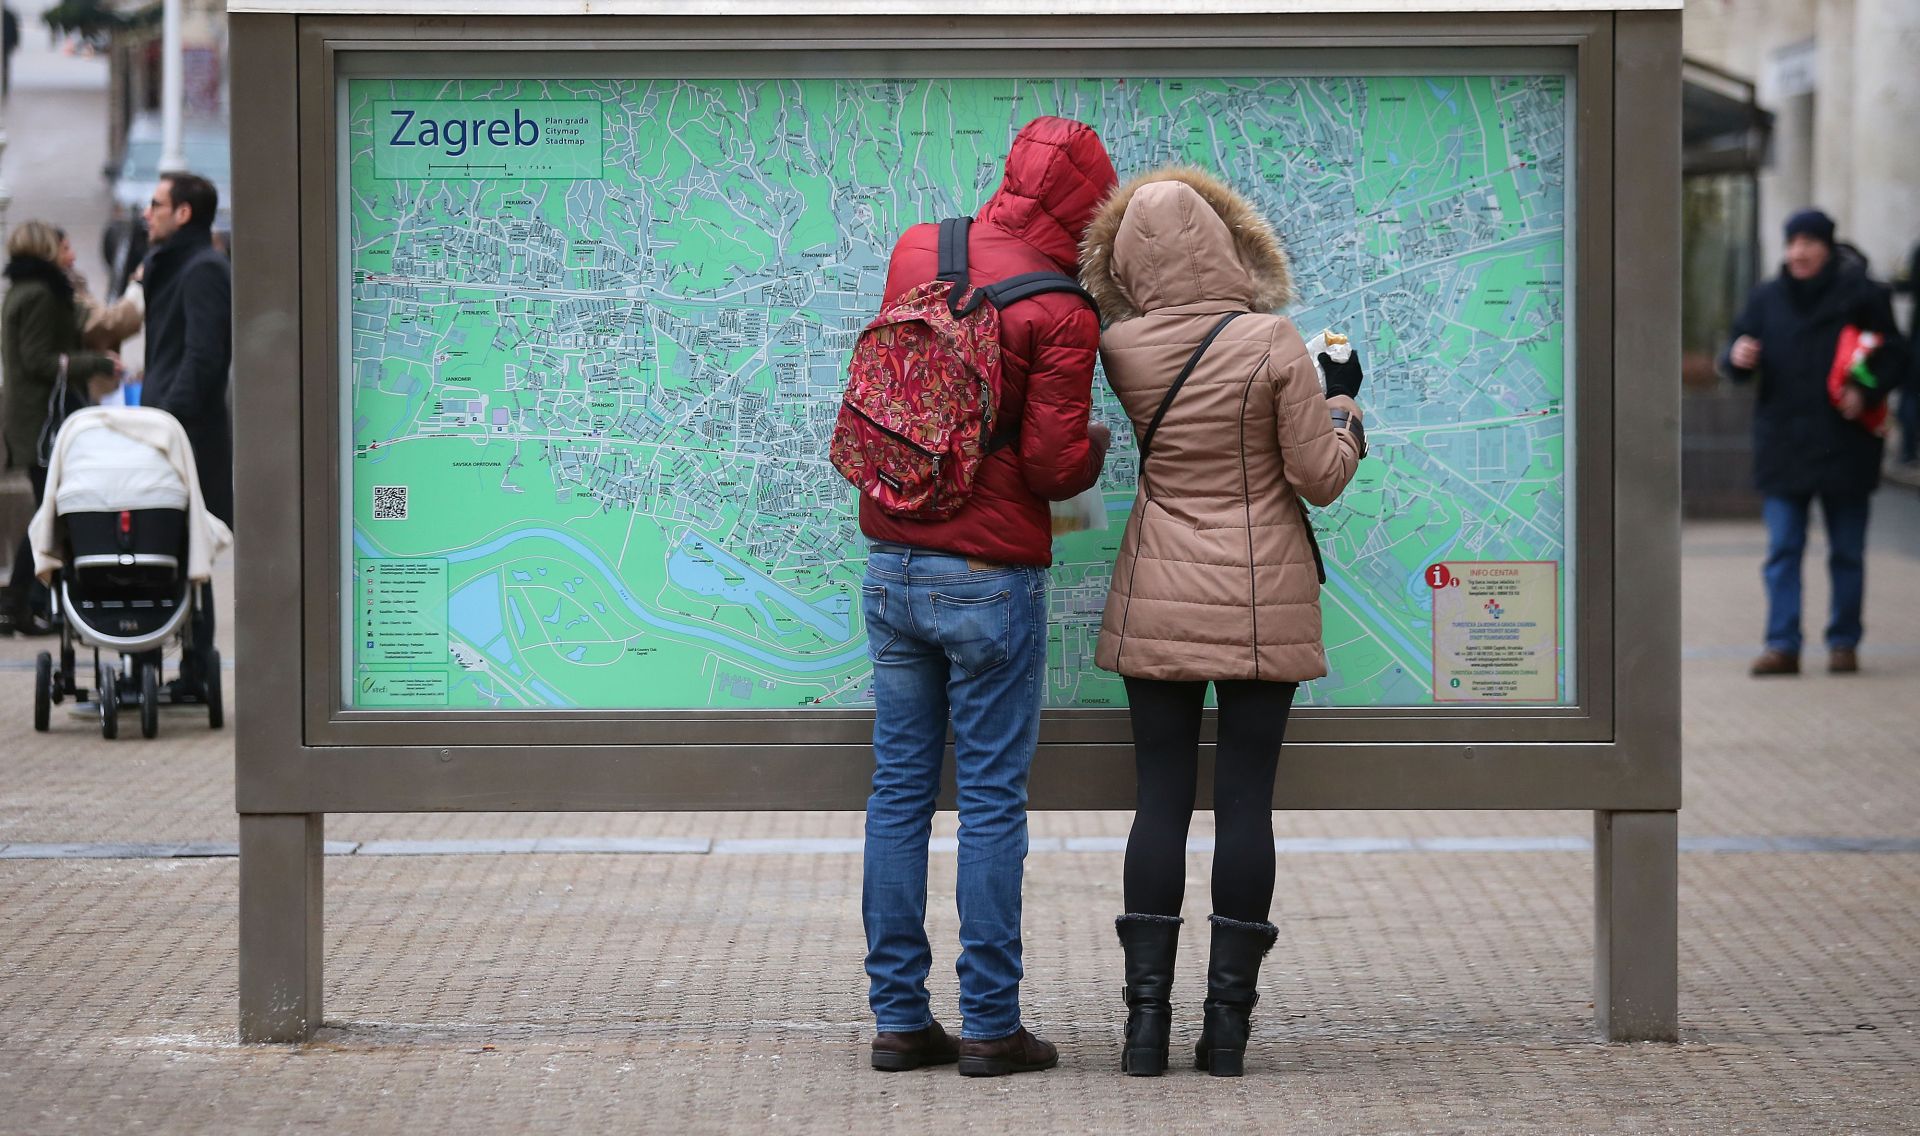 09.02.2017., Zagreb - Turisti i u razgledavanju grada unatoc ruznom vremenu.
Photo: Jurica Galoic/PIXSELL